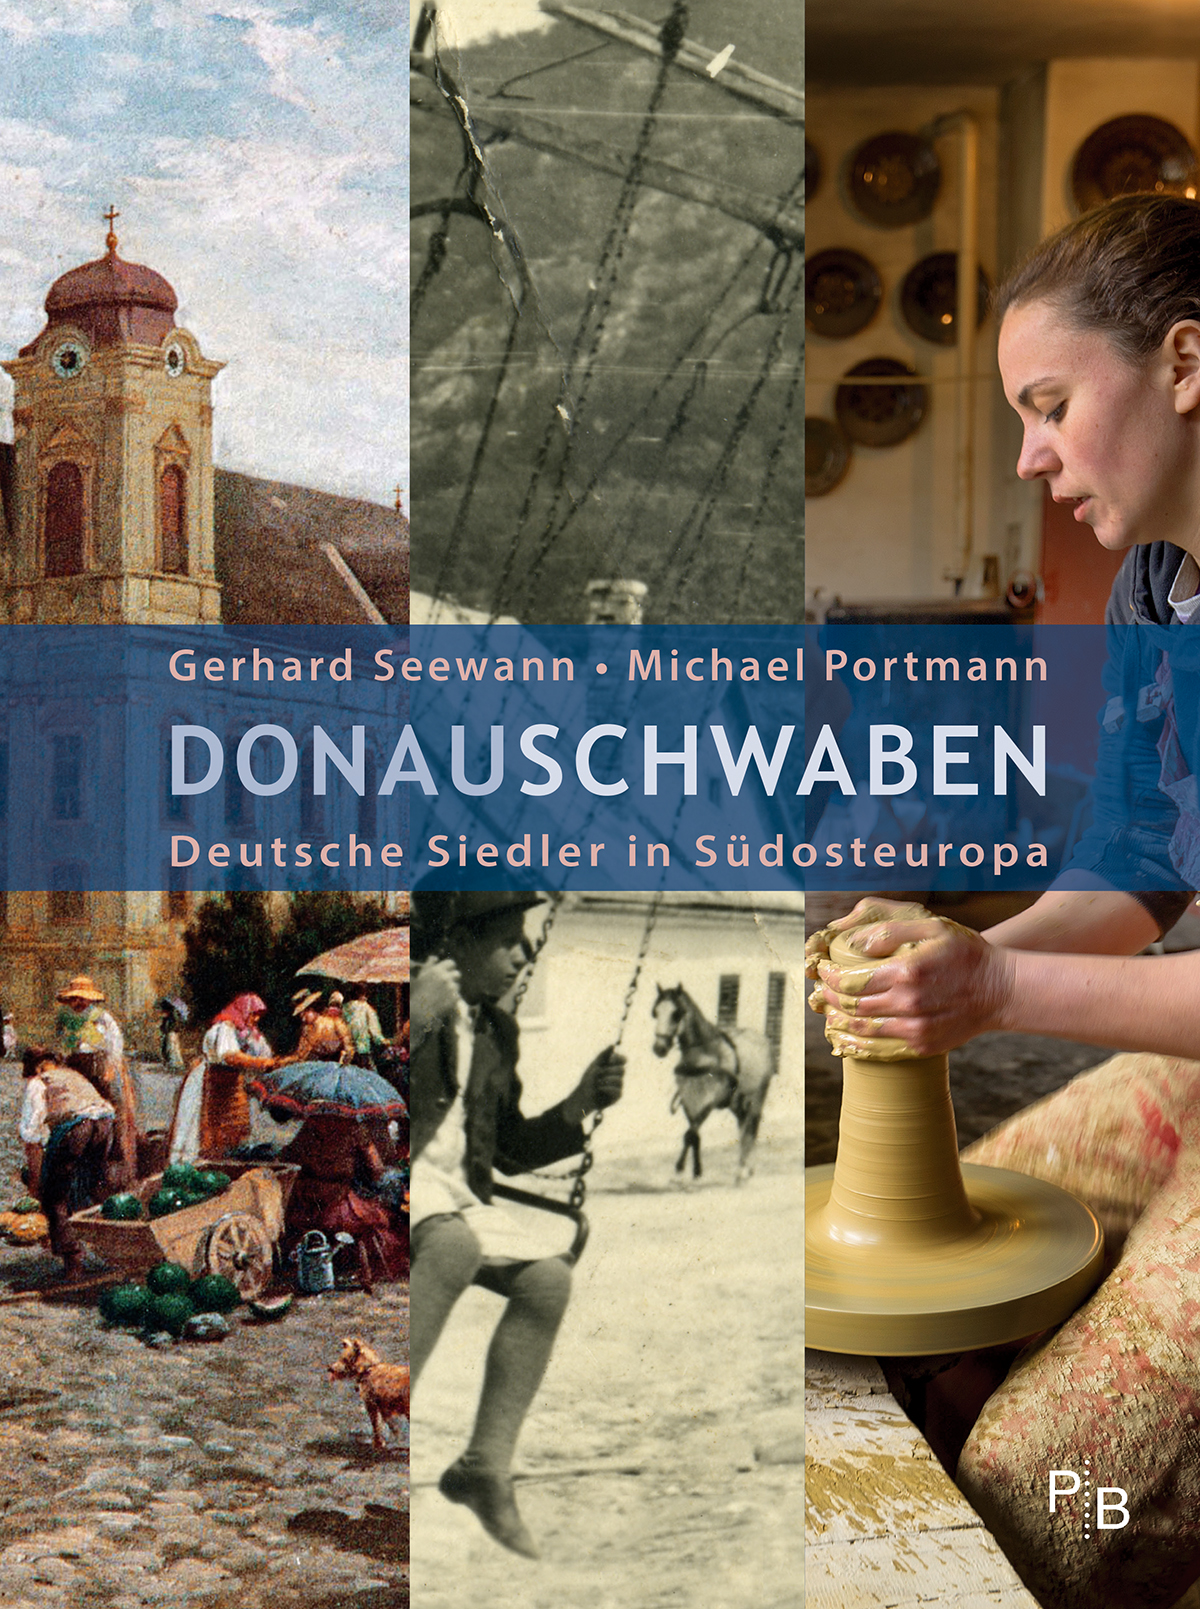 Buchcover: Gerhard Seewann und Michael Portmann: Donauschwaben. Deutsche Siedler in Südosteuropa